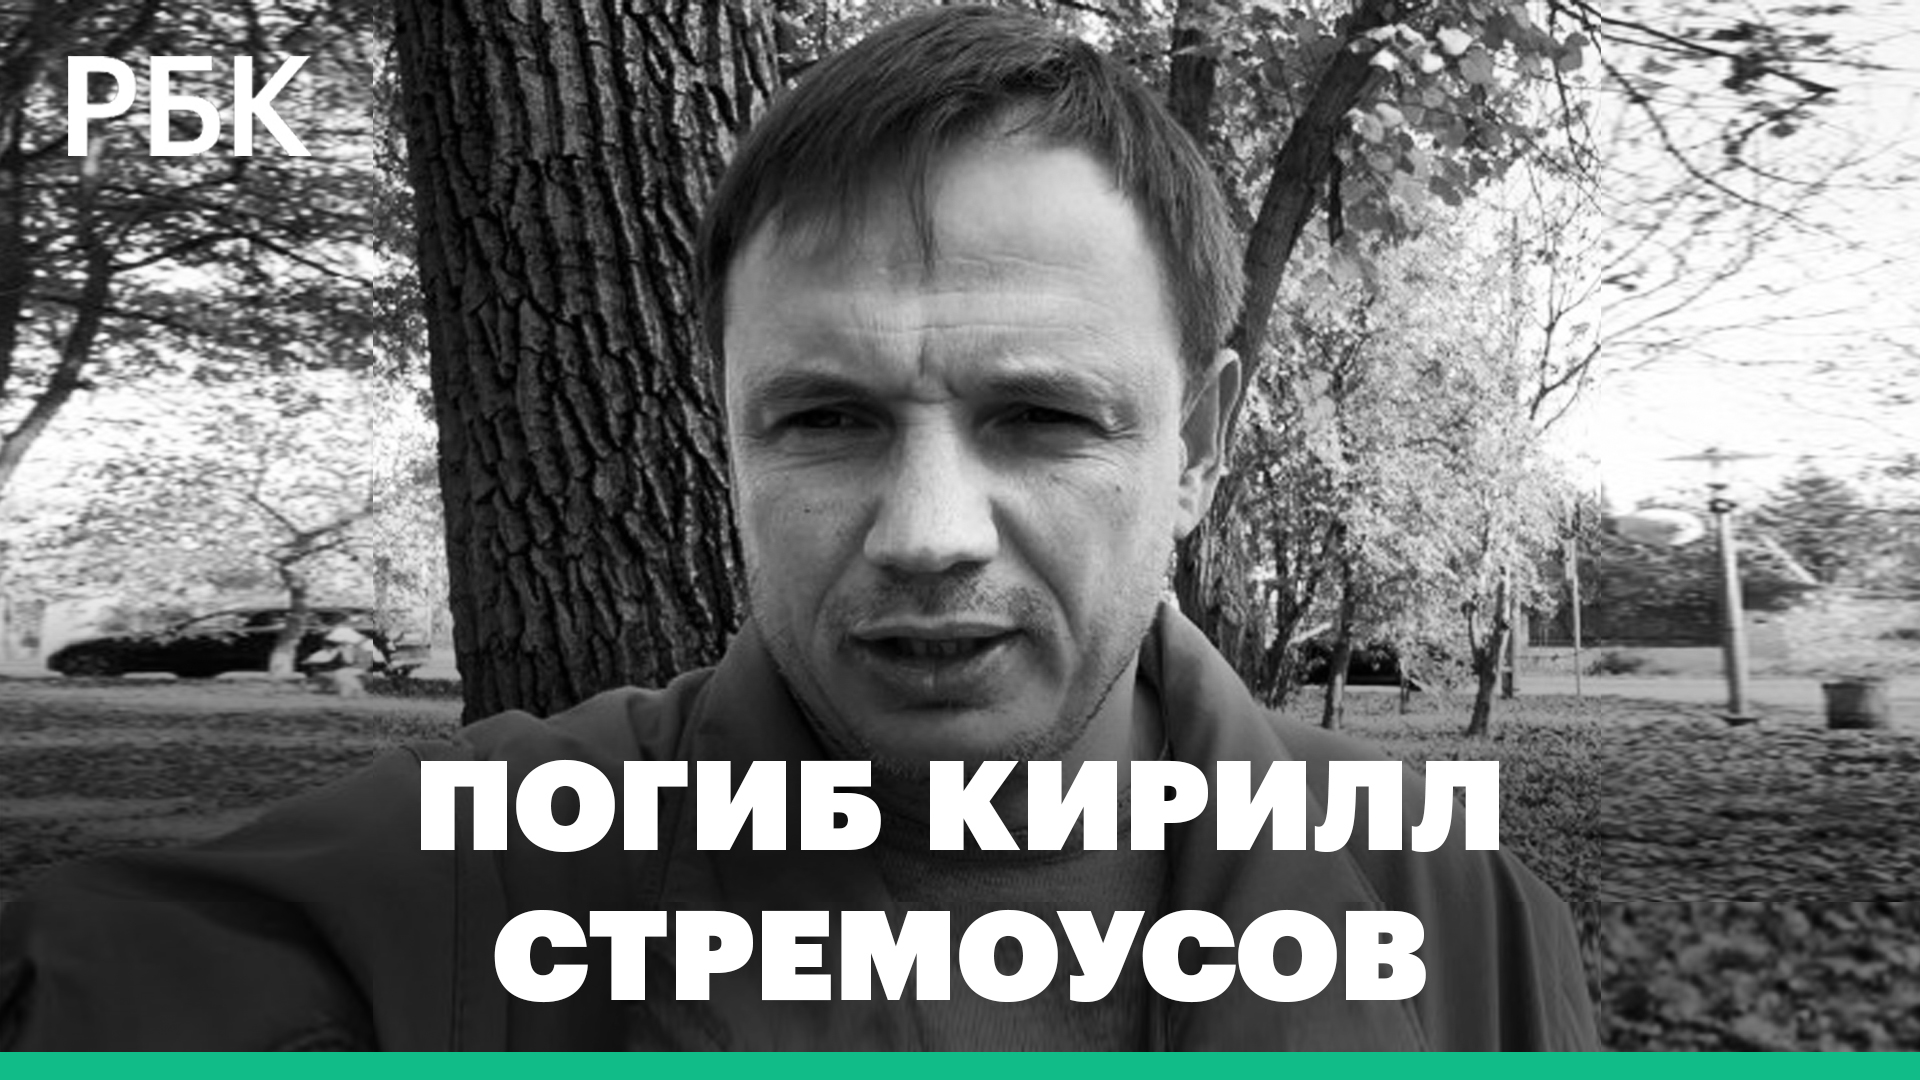 Замгубернатора Херсонской области Кирилл Стремоусов погиб в ДТП